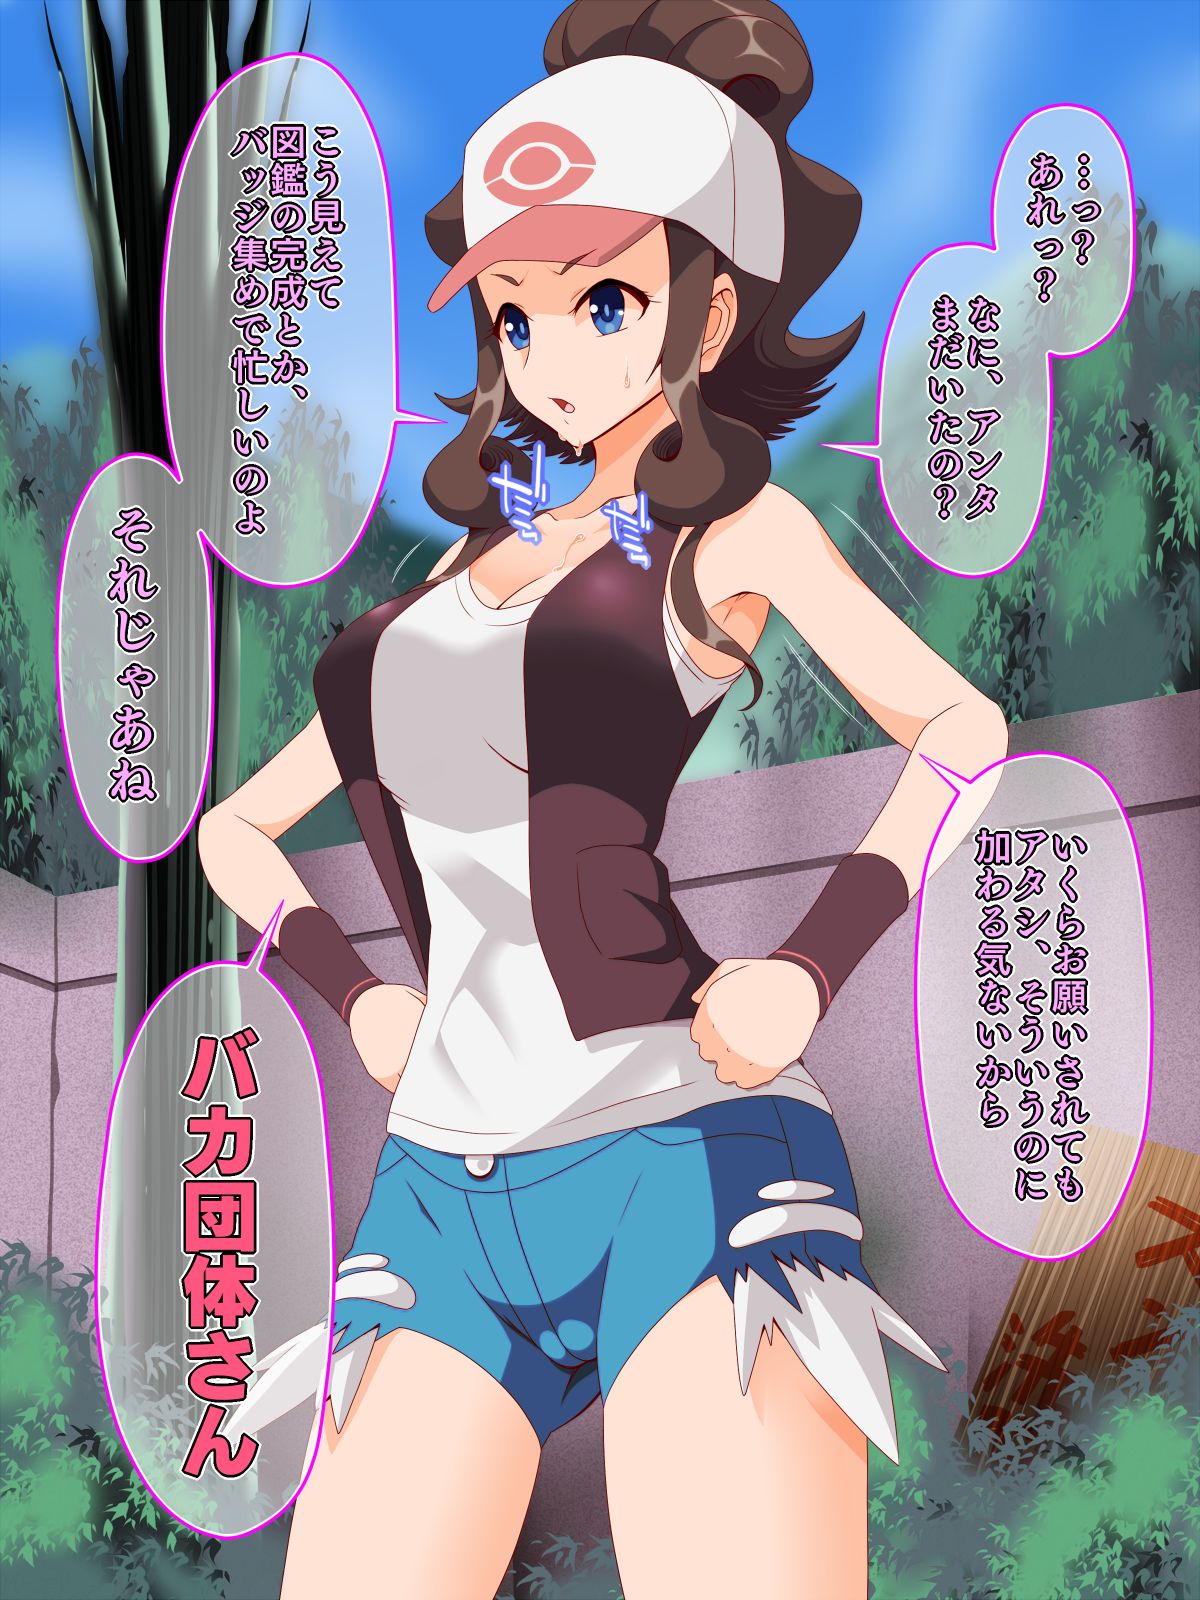 Read Shiroi Kuroi Zundoko Sennou - Isshu Hen (Pokémon) Henta